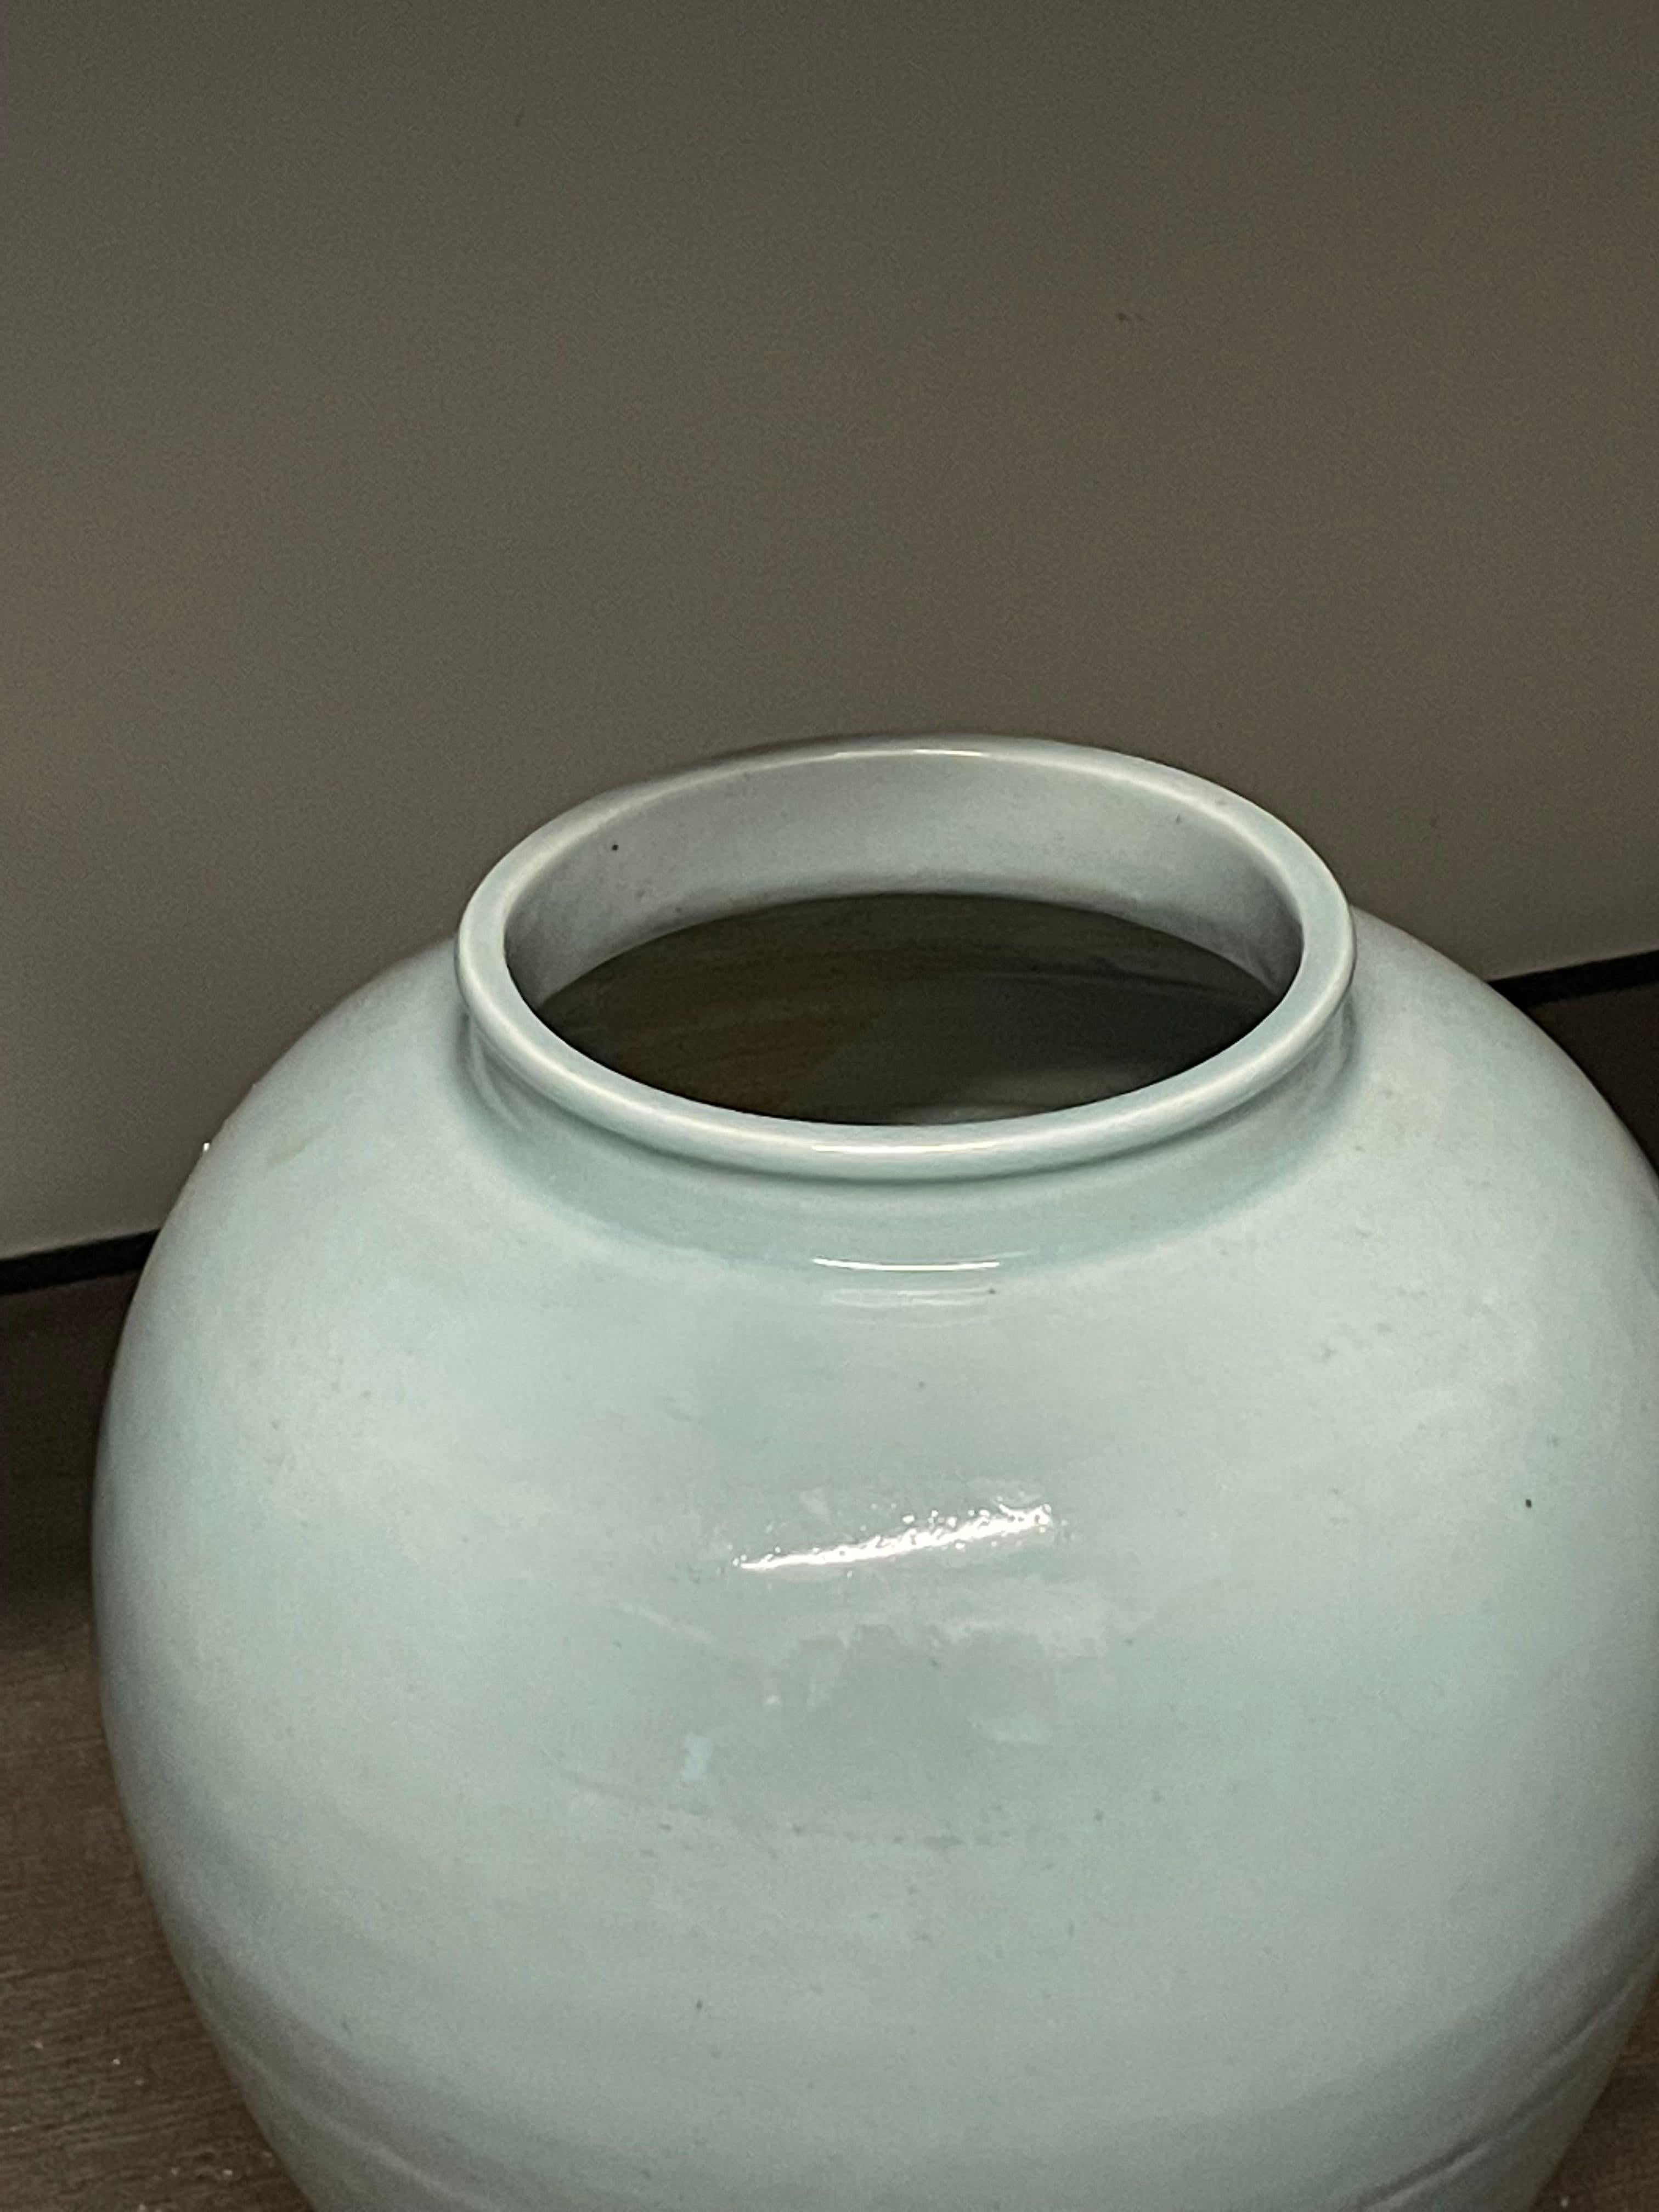 Vase contemporain chinois à glaçure celedon.
La glaçure donne au vase un aspect vieilli.
Forme incurvée à large embouchure.
